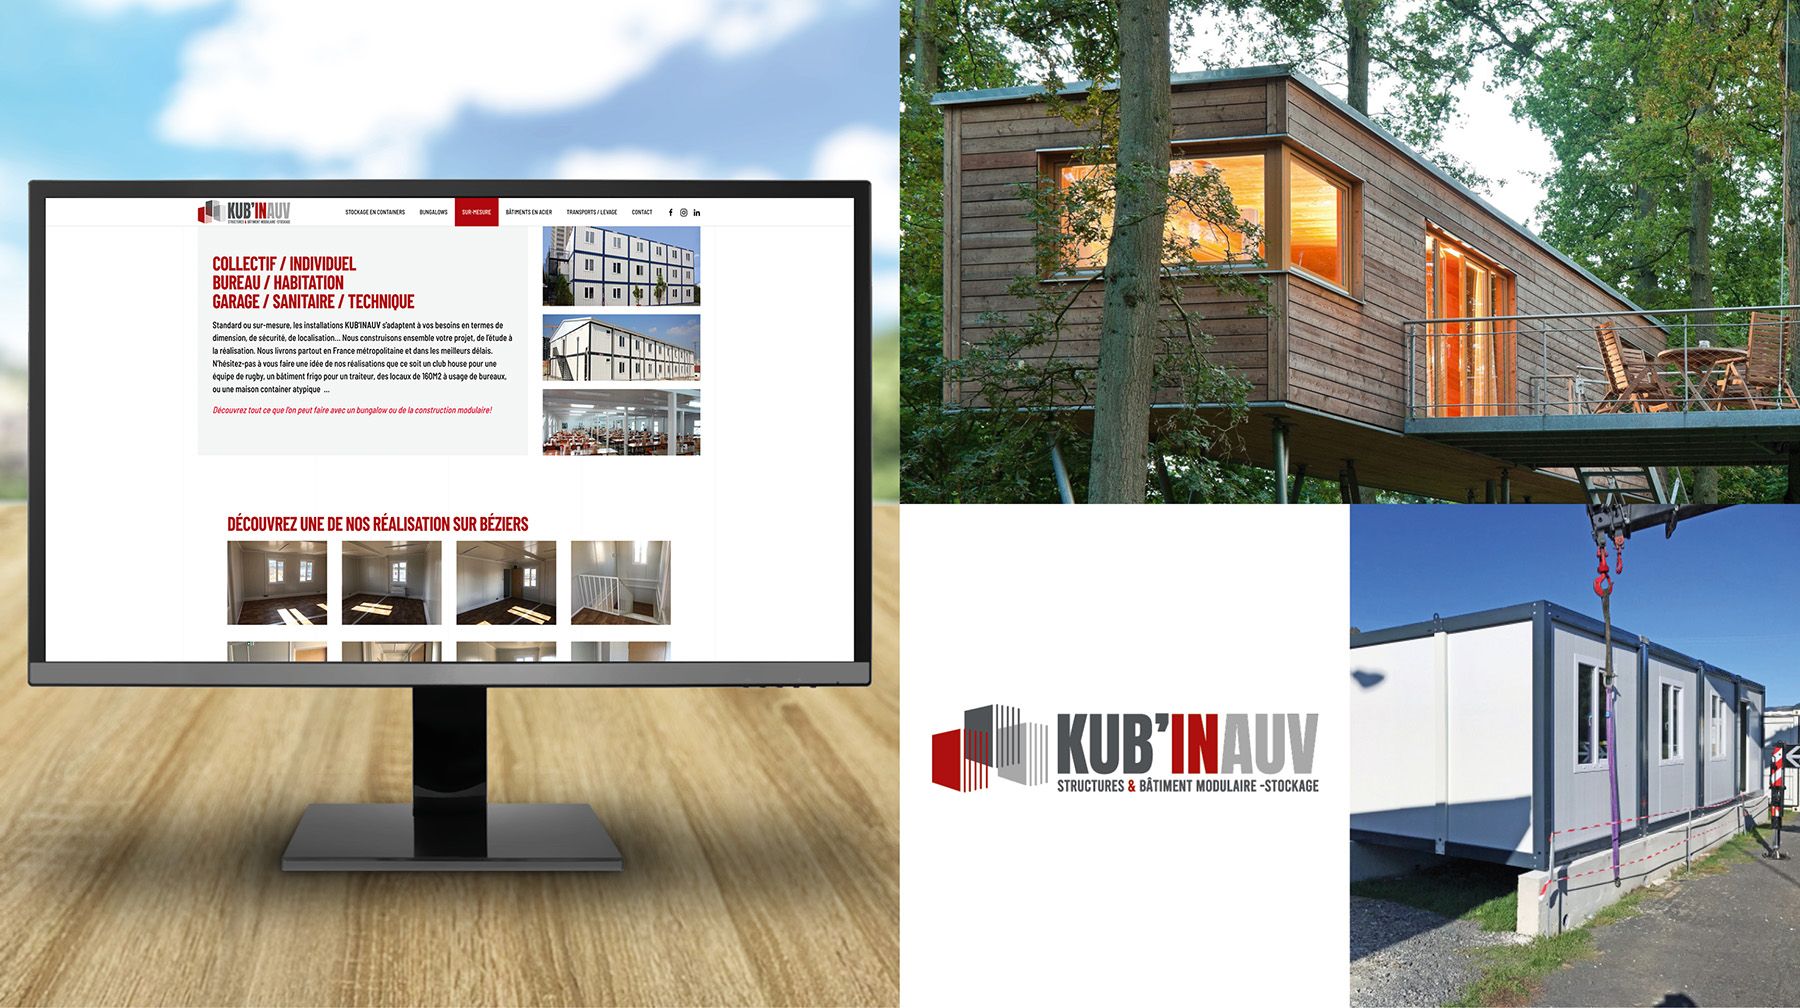 Kubinauv - Location vente de bungalow de chantier, modulaire et container